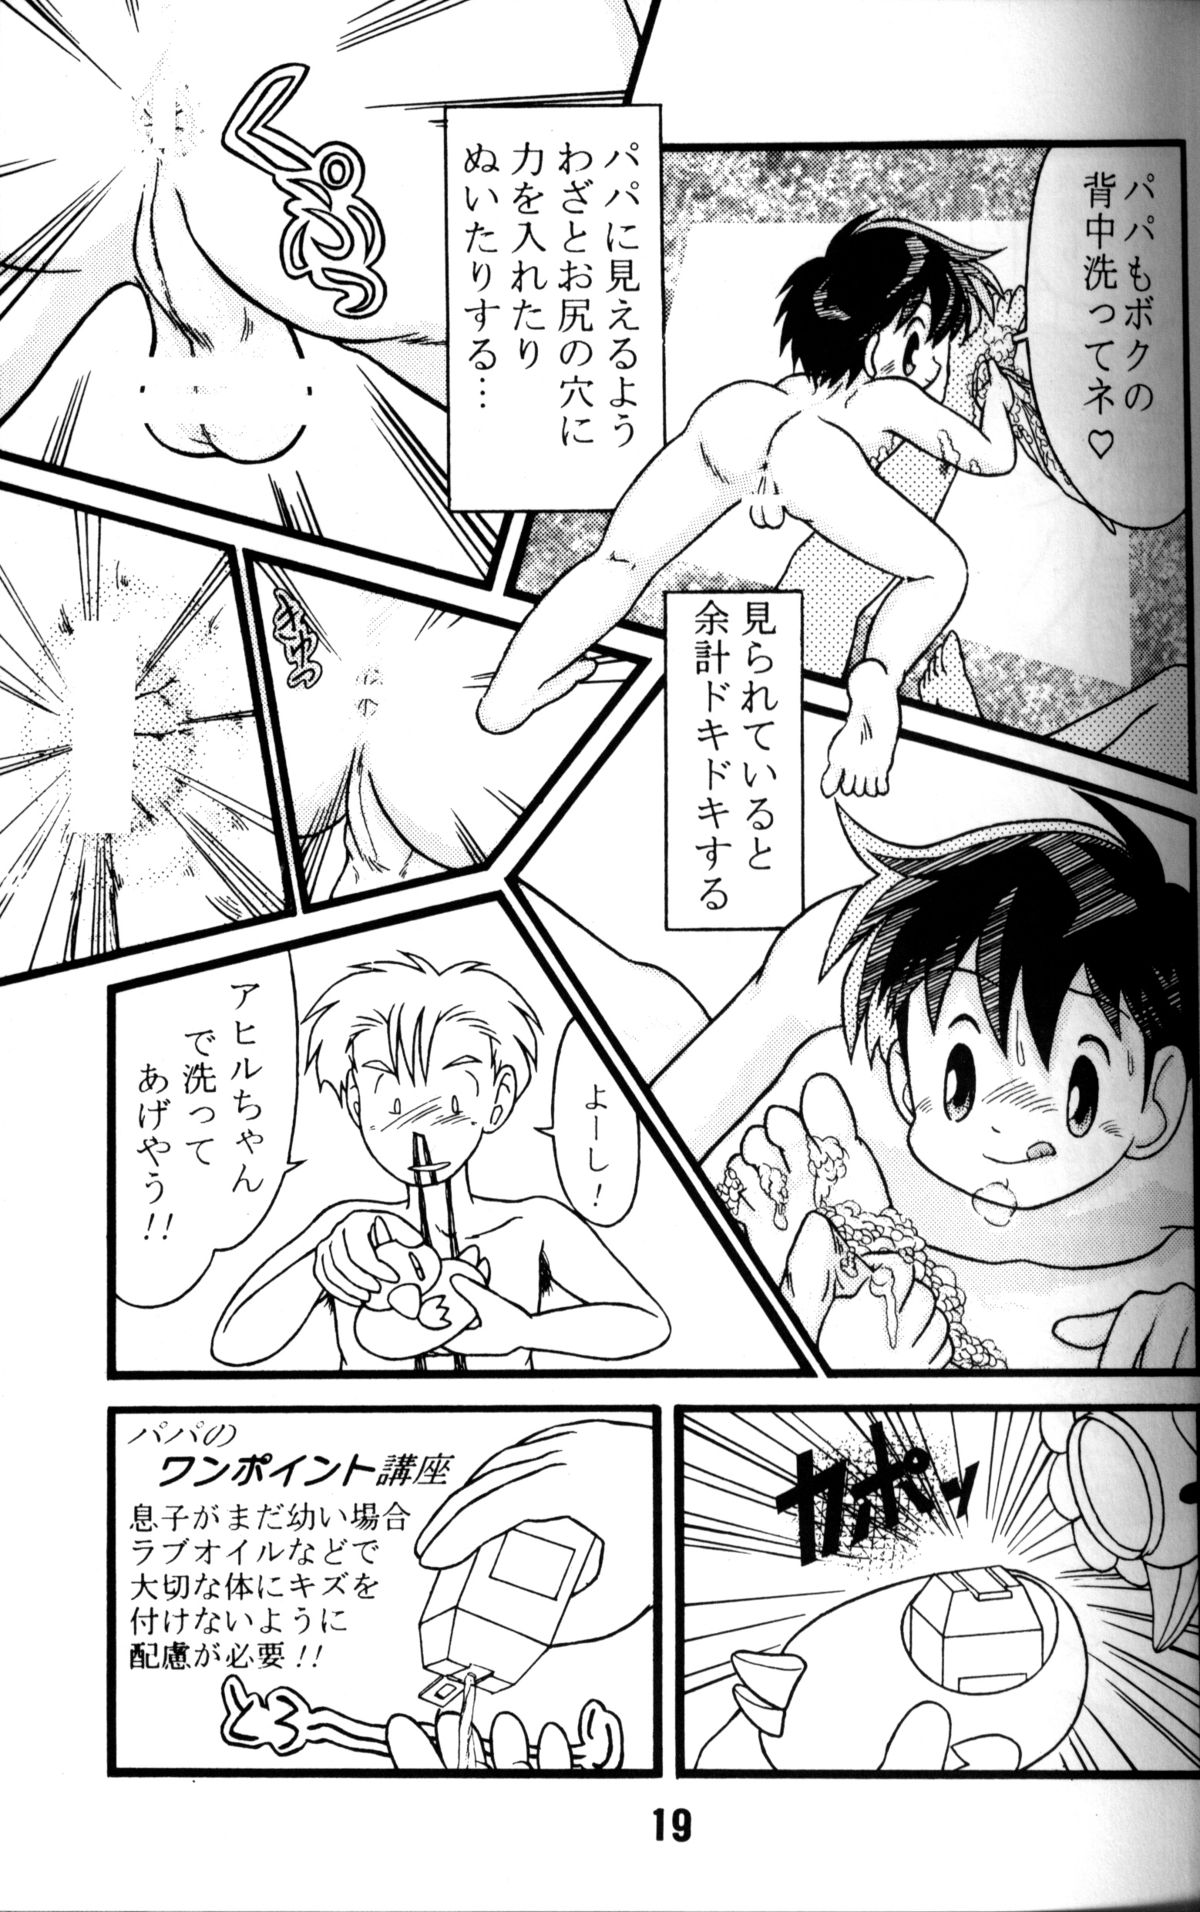 Anthology - Nekketsu Project - Volume 1 'Shounen Banana Milk' page 18 full